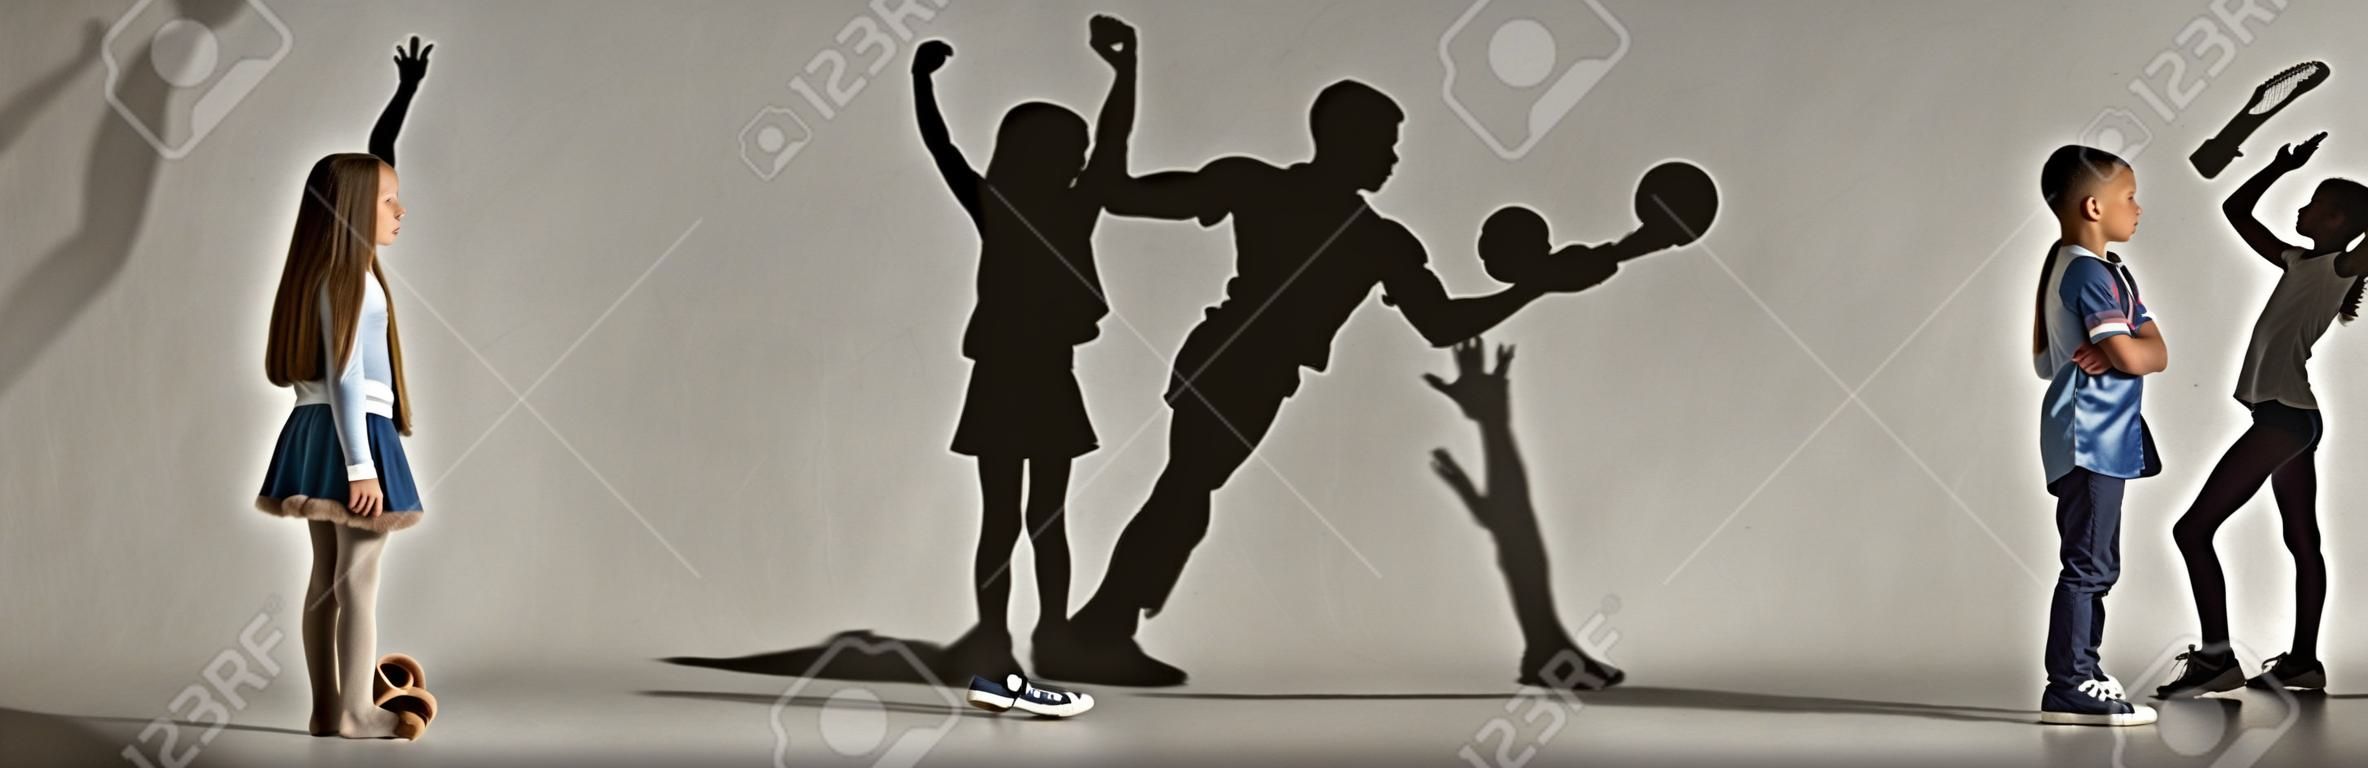 Enfance et rêve d'un avenir grand et célèbre. Image conceptuelle avec garçon et fille et ombres d'athlète en forme, joueur de hockey, bodybuilder, ballerine. Collage créatif composé de 2 modèles.